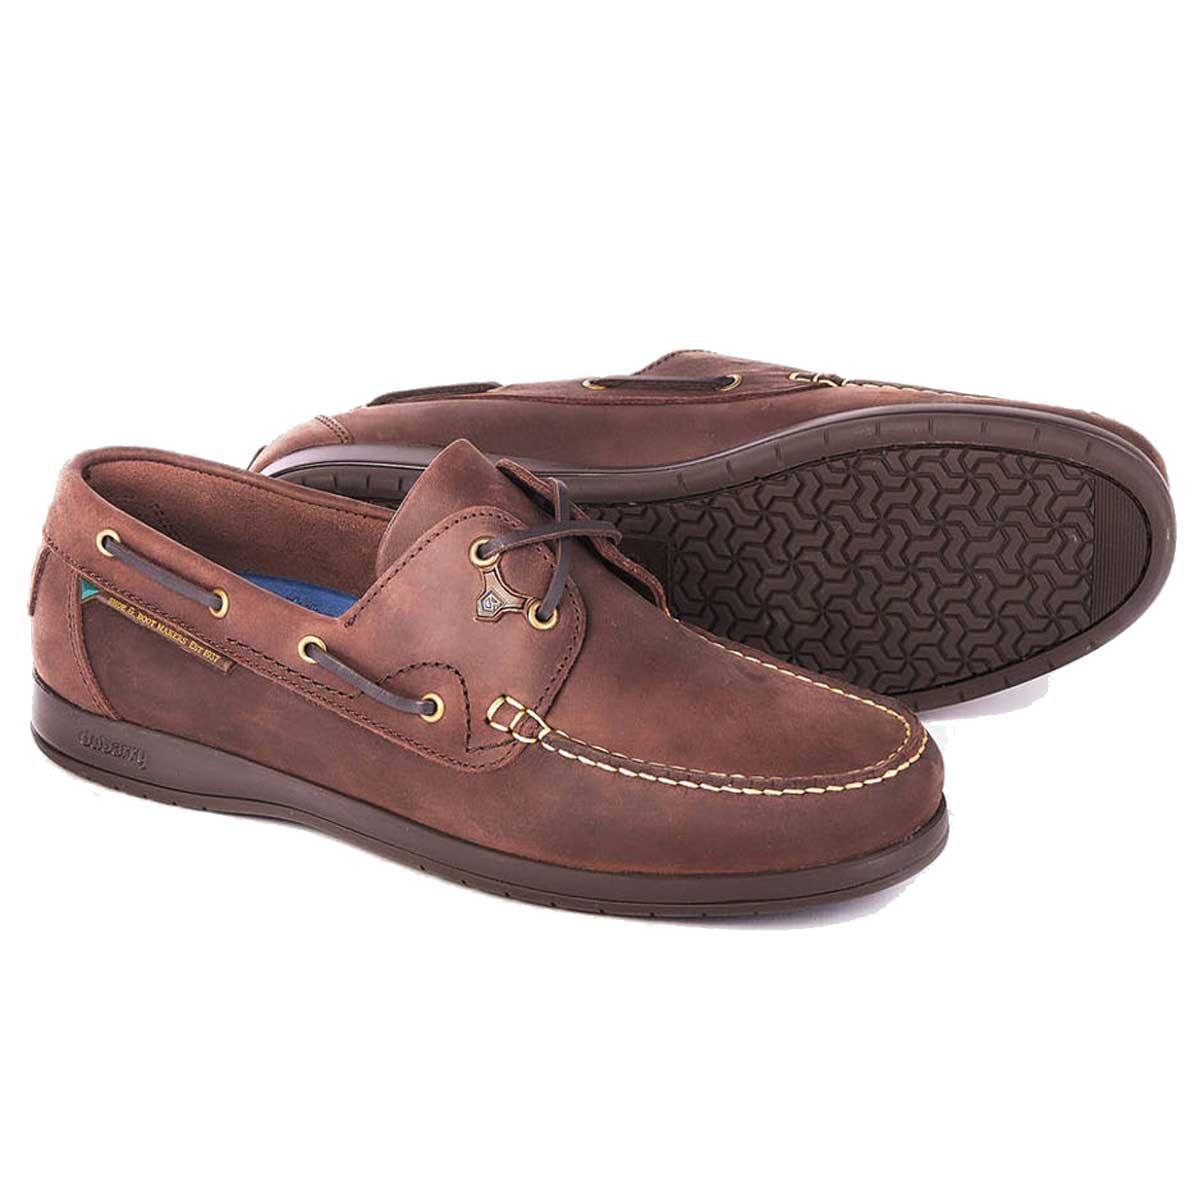 Dubarry Sailmaker X LT Deck Shoes - Men's - 5 Colour Options